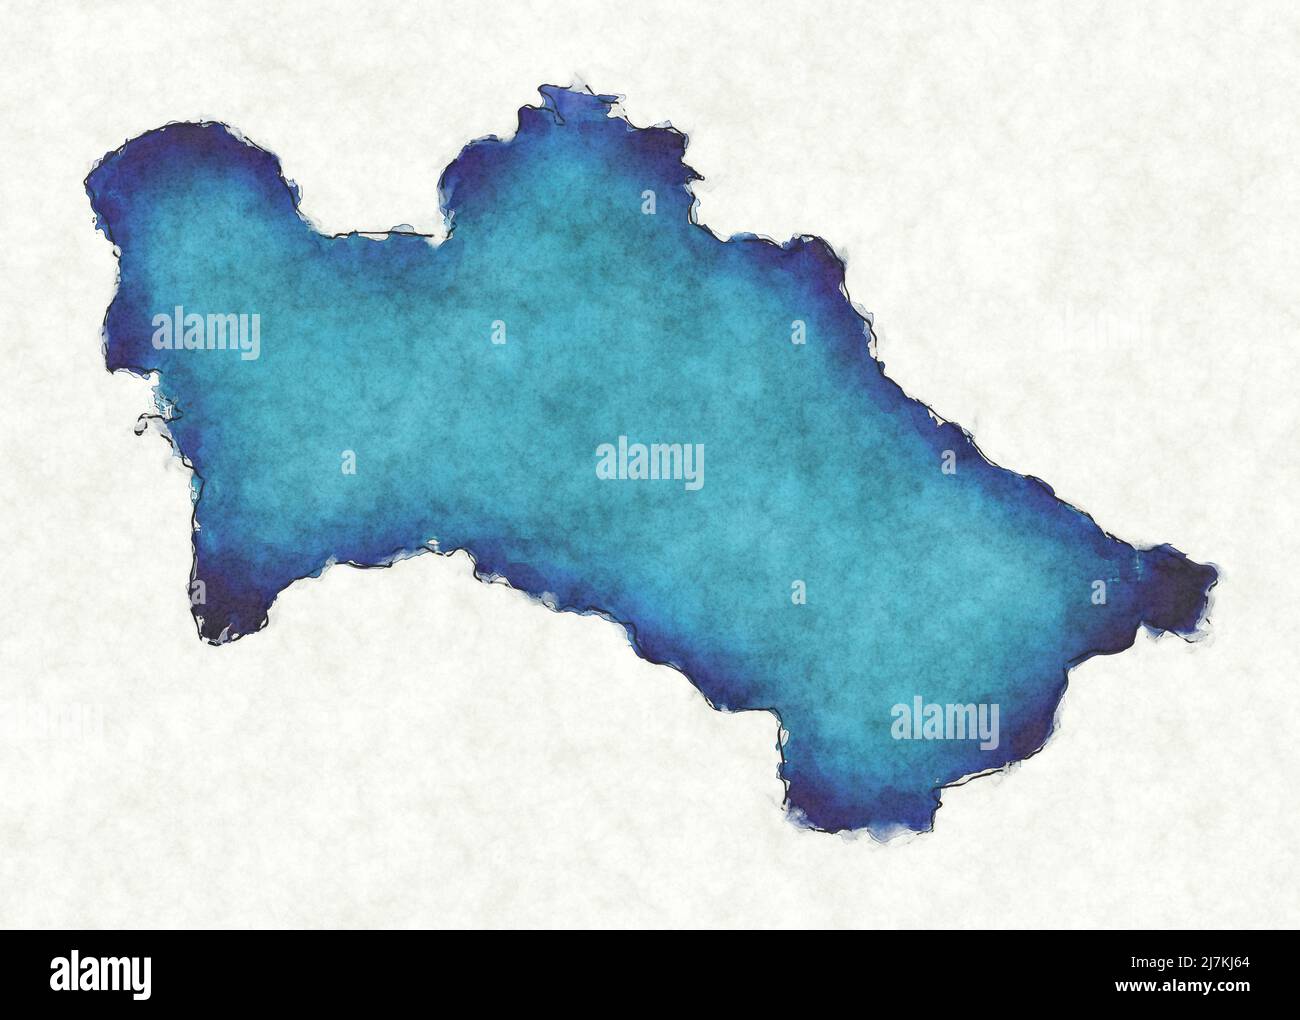 Mapa de Turkmenistán con líneas trazadas e ilustración de acuarela azul Foto de stock